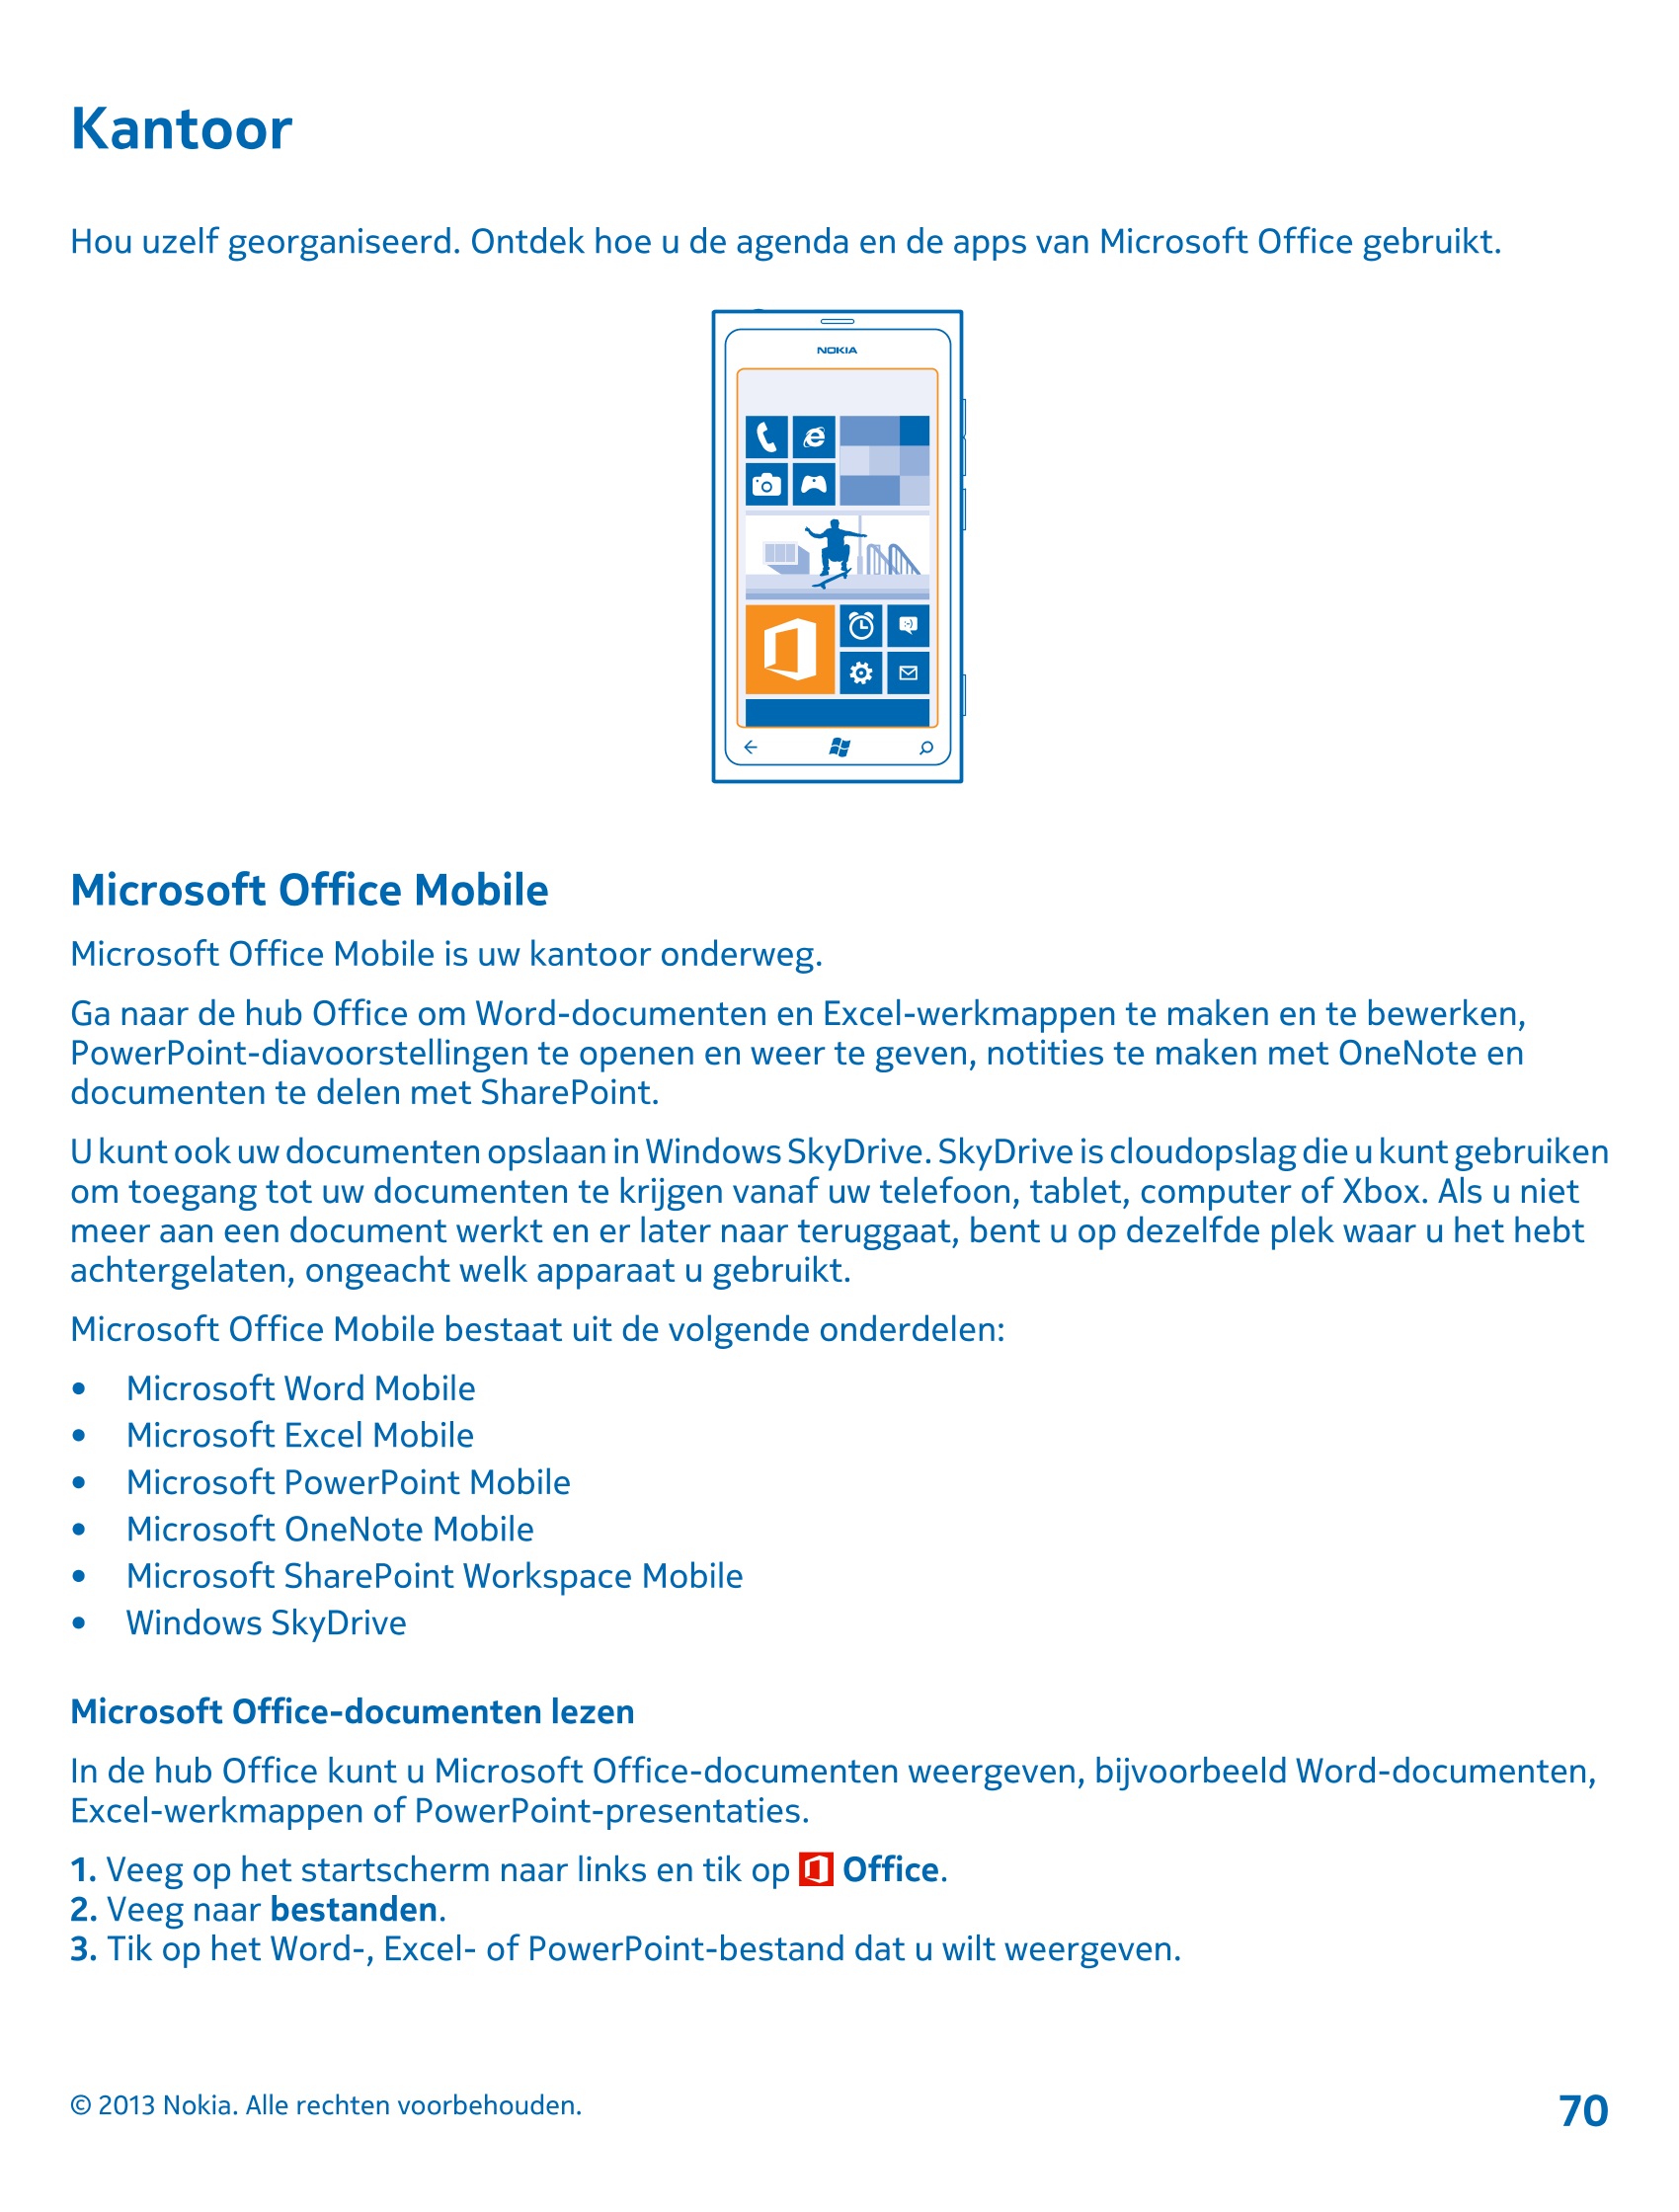 Kantoor
Hou uzelf georganiseerd. Ontdek hoe u de agenda en de apps van Microsoft Office gebruikt.
Microsoft Office Mobile
Micros